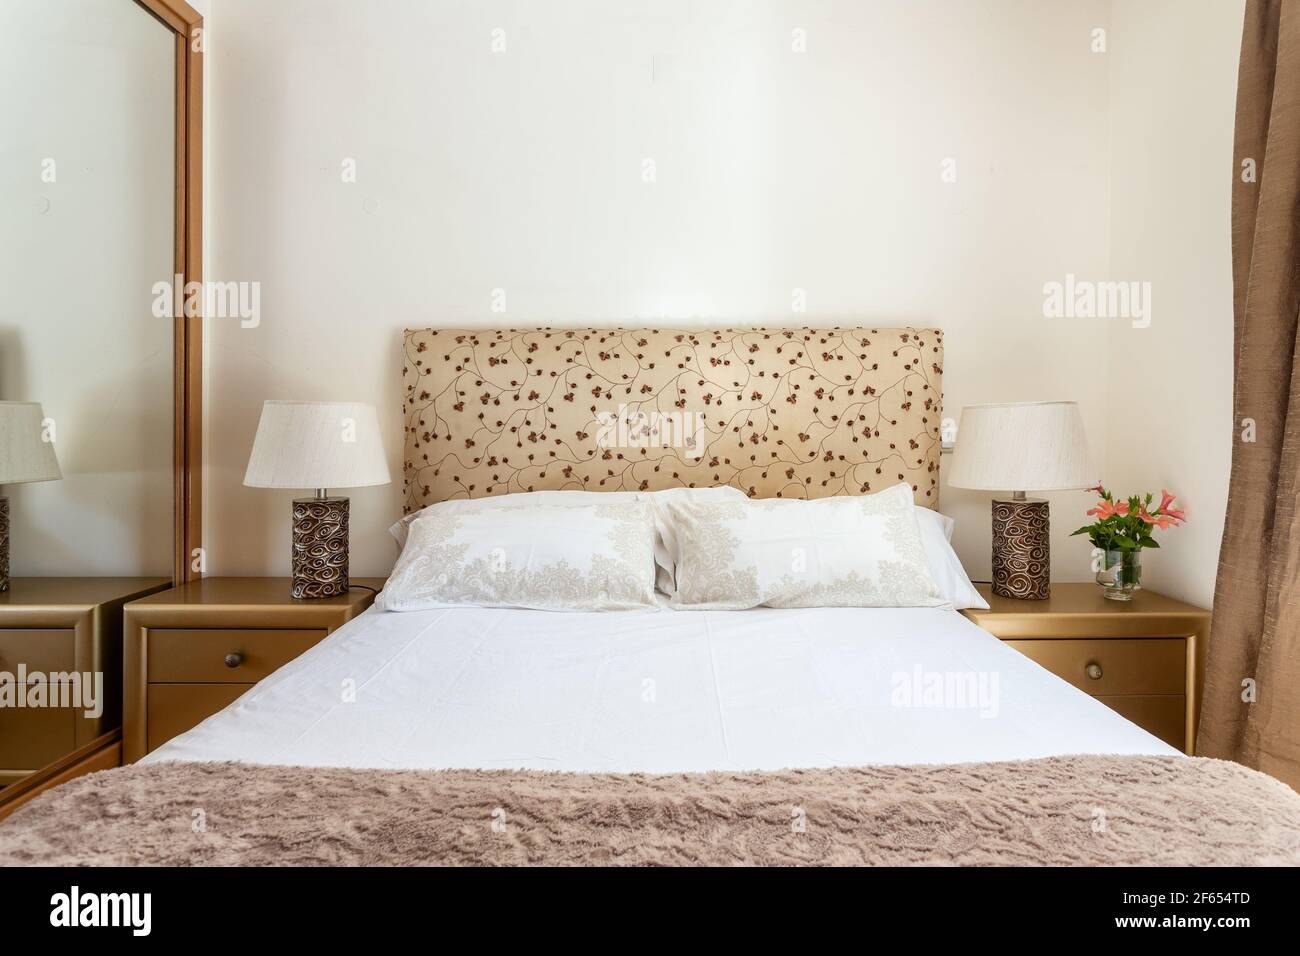 Das Zimmer war sauber und schlicht und hatte beigefarbene Farben, ein weißes Bett mit Kissen und einen Nachttisch auf jeder Seite. Immobilien. Stockfoto